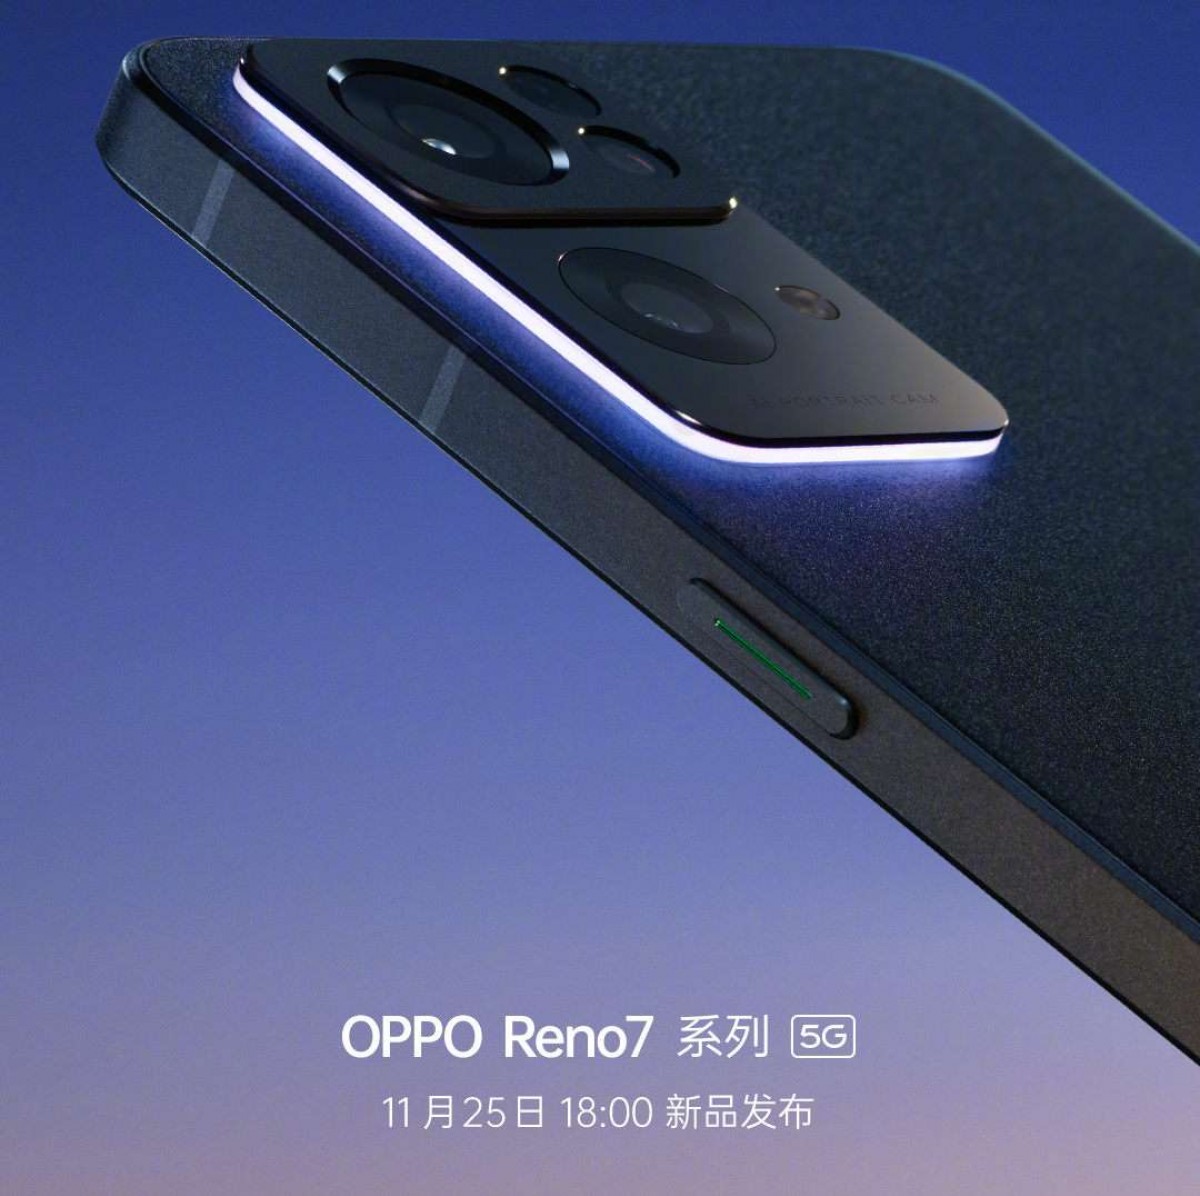 Oppo Reno7 sur JD.com, disponible le 25 novembre, les spécifications et les rendus sont ici